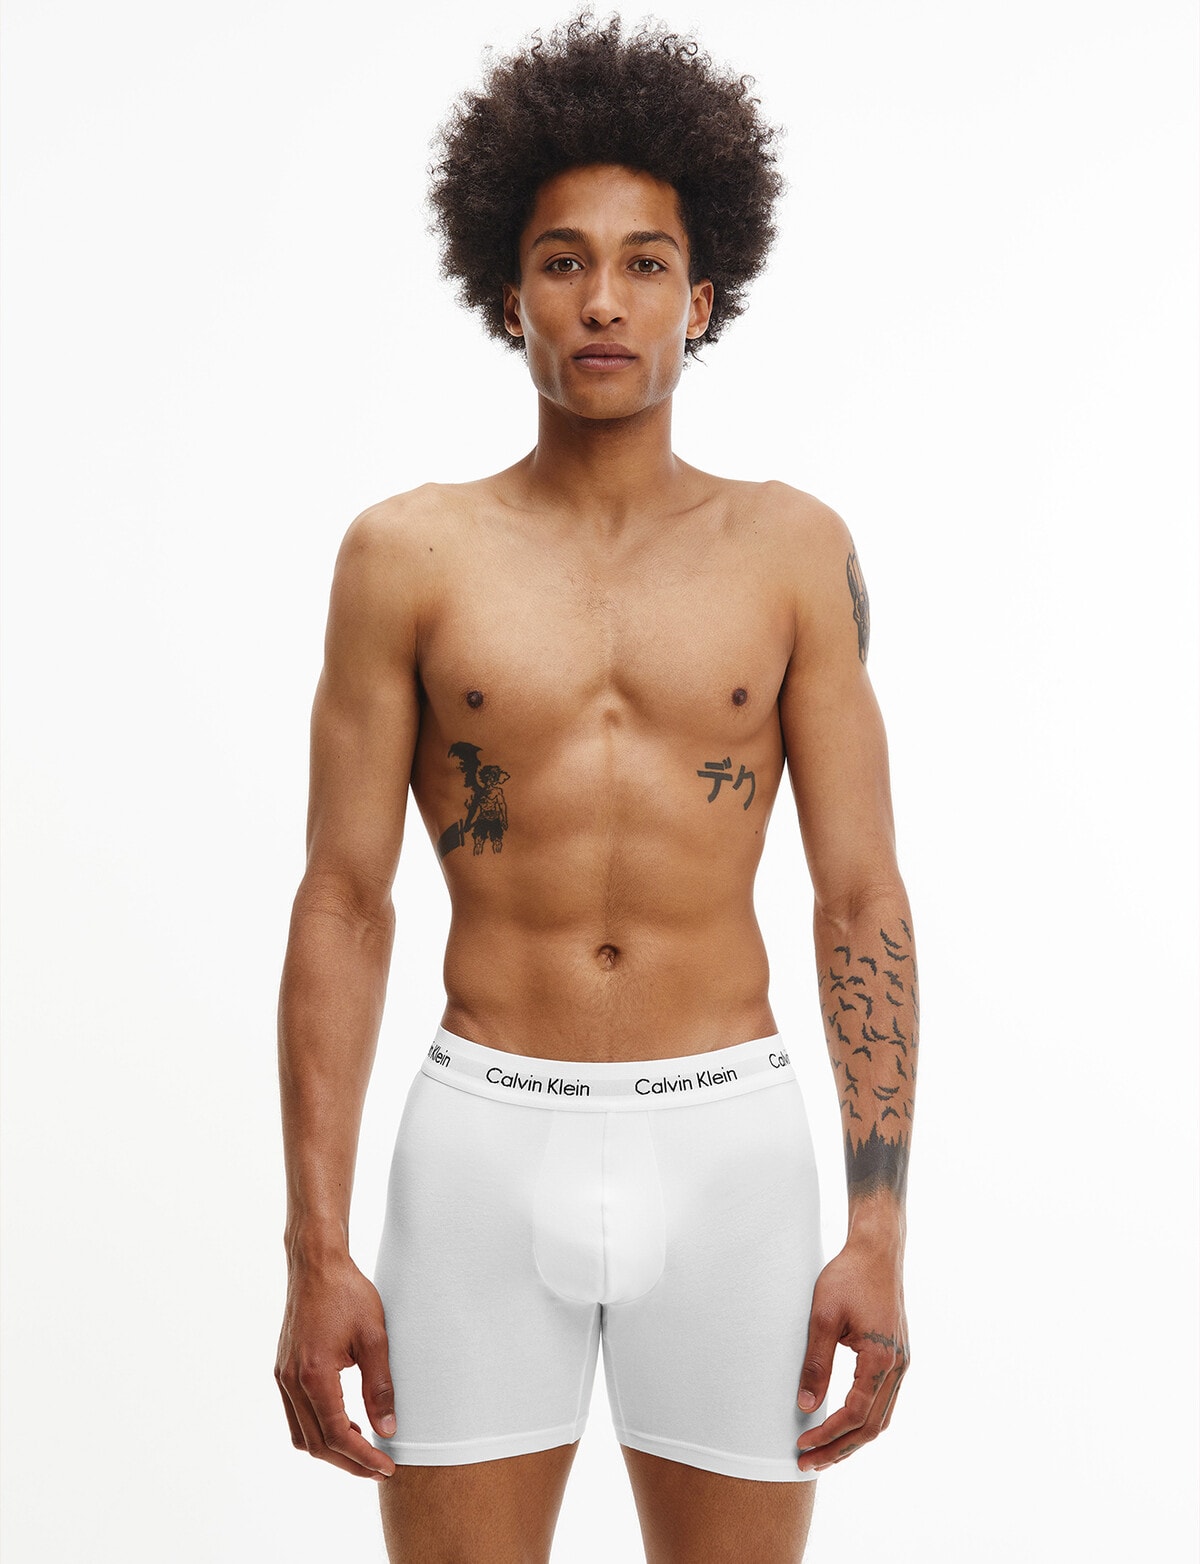 Calvin Klein Cotton Stretch Boxer Brief, 3-Pack, Black, White & Grey -  Underwear